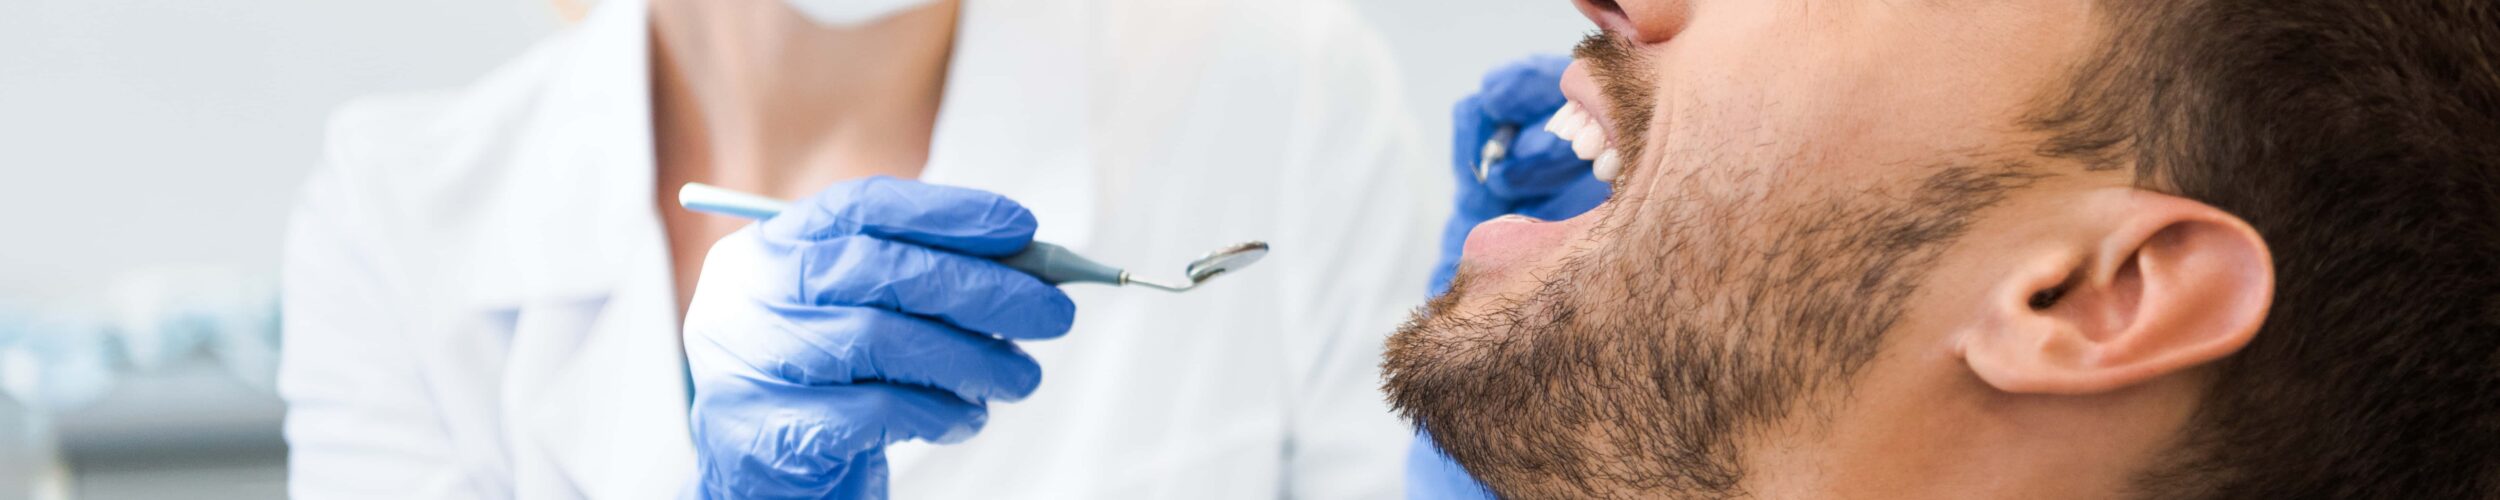 DentNet – bestens vernetzt für mehr Zahngesundheit